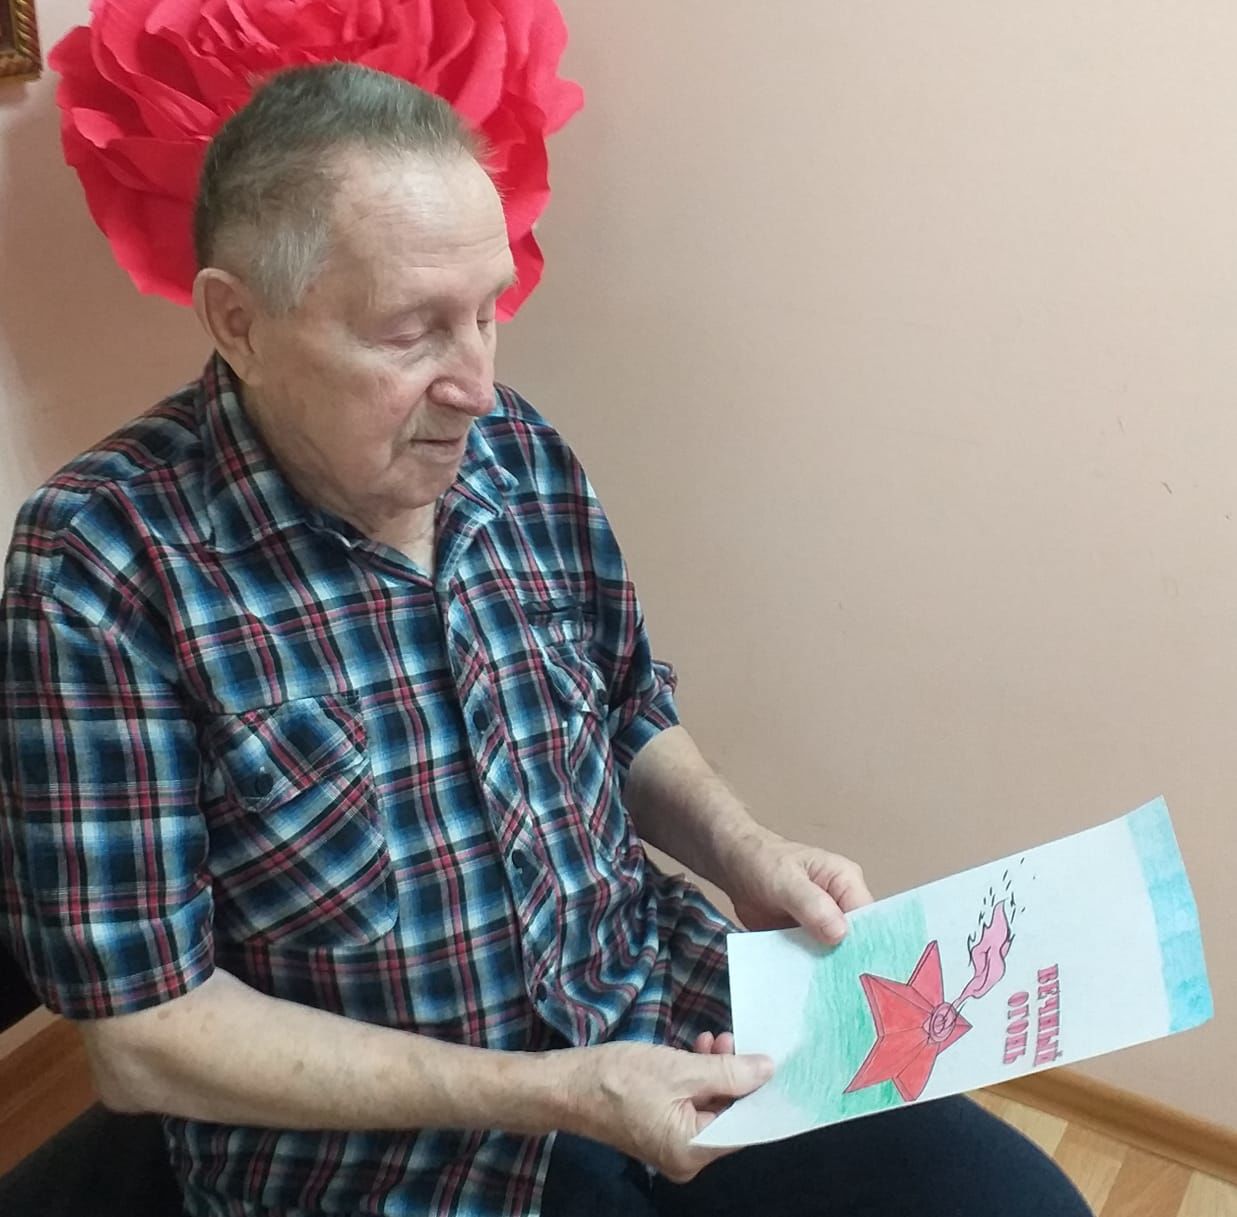 Проживающие Спасского дома-интерната для престарелых и инвалидов почтили память Героев Отечества